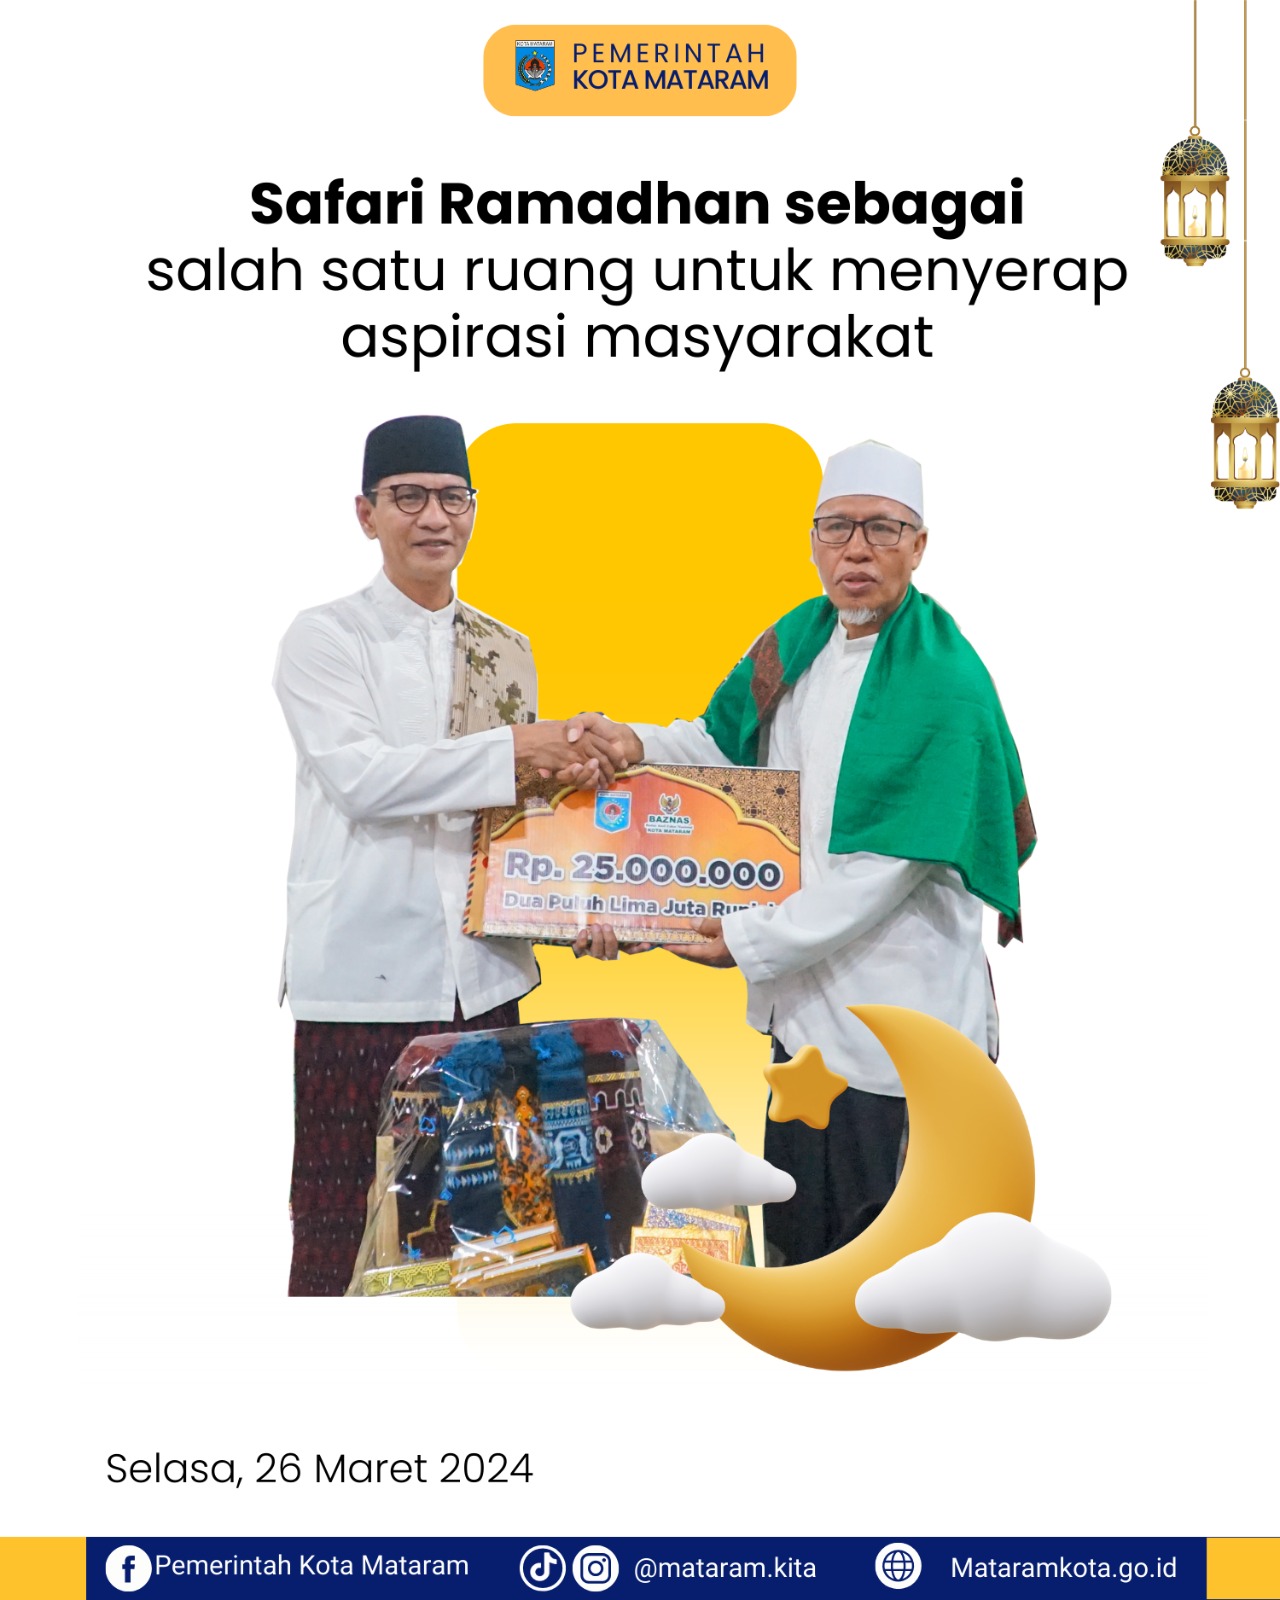 Safari Ramadhan sebagai salah satu ruang untuk menyerap aspirasi masyarakat